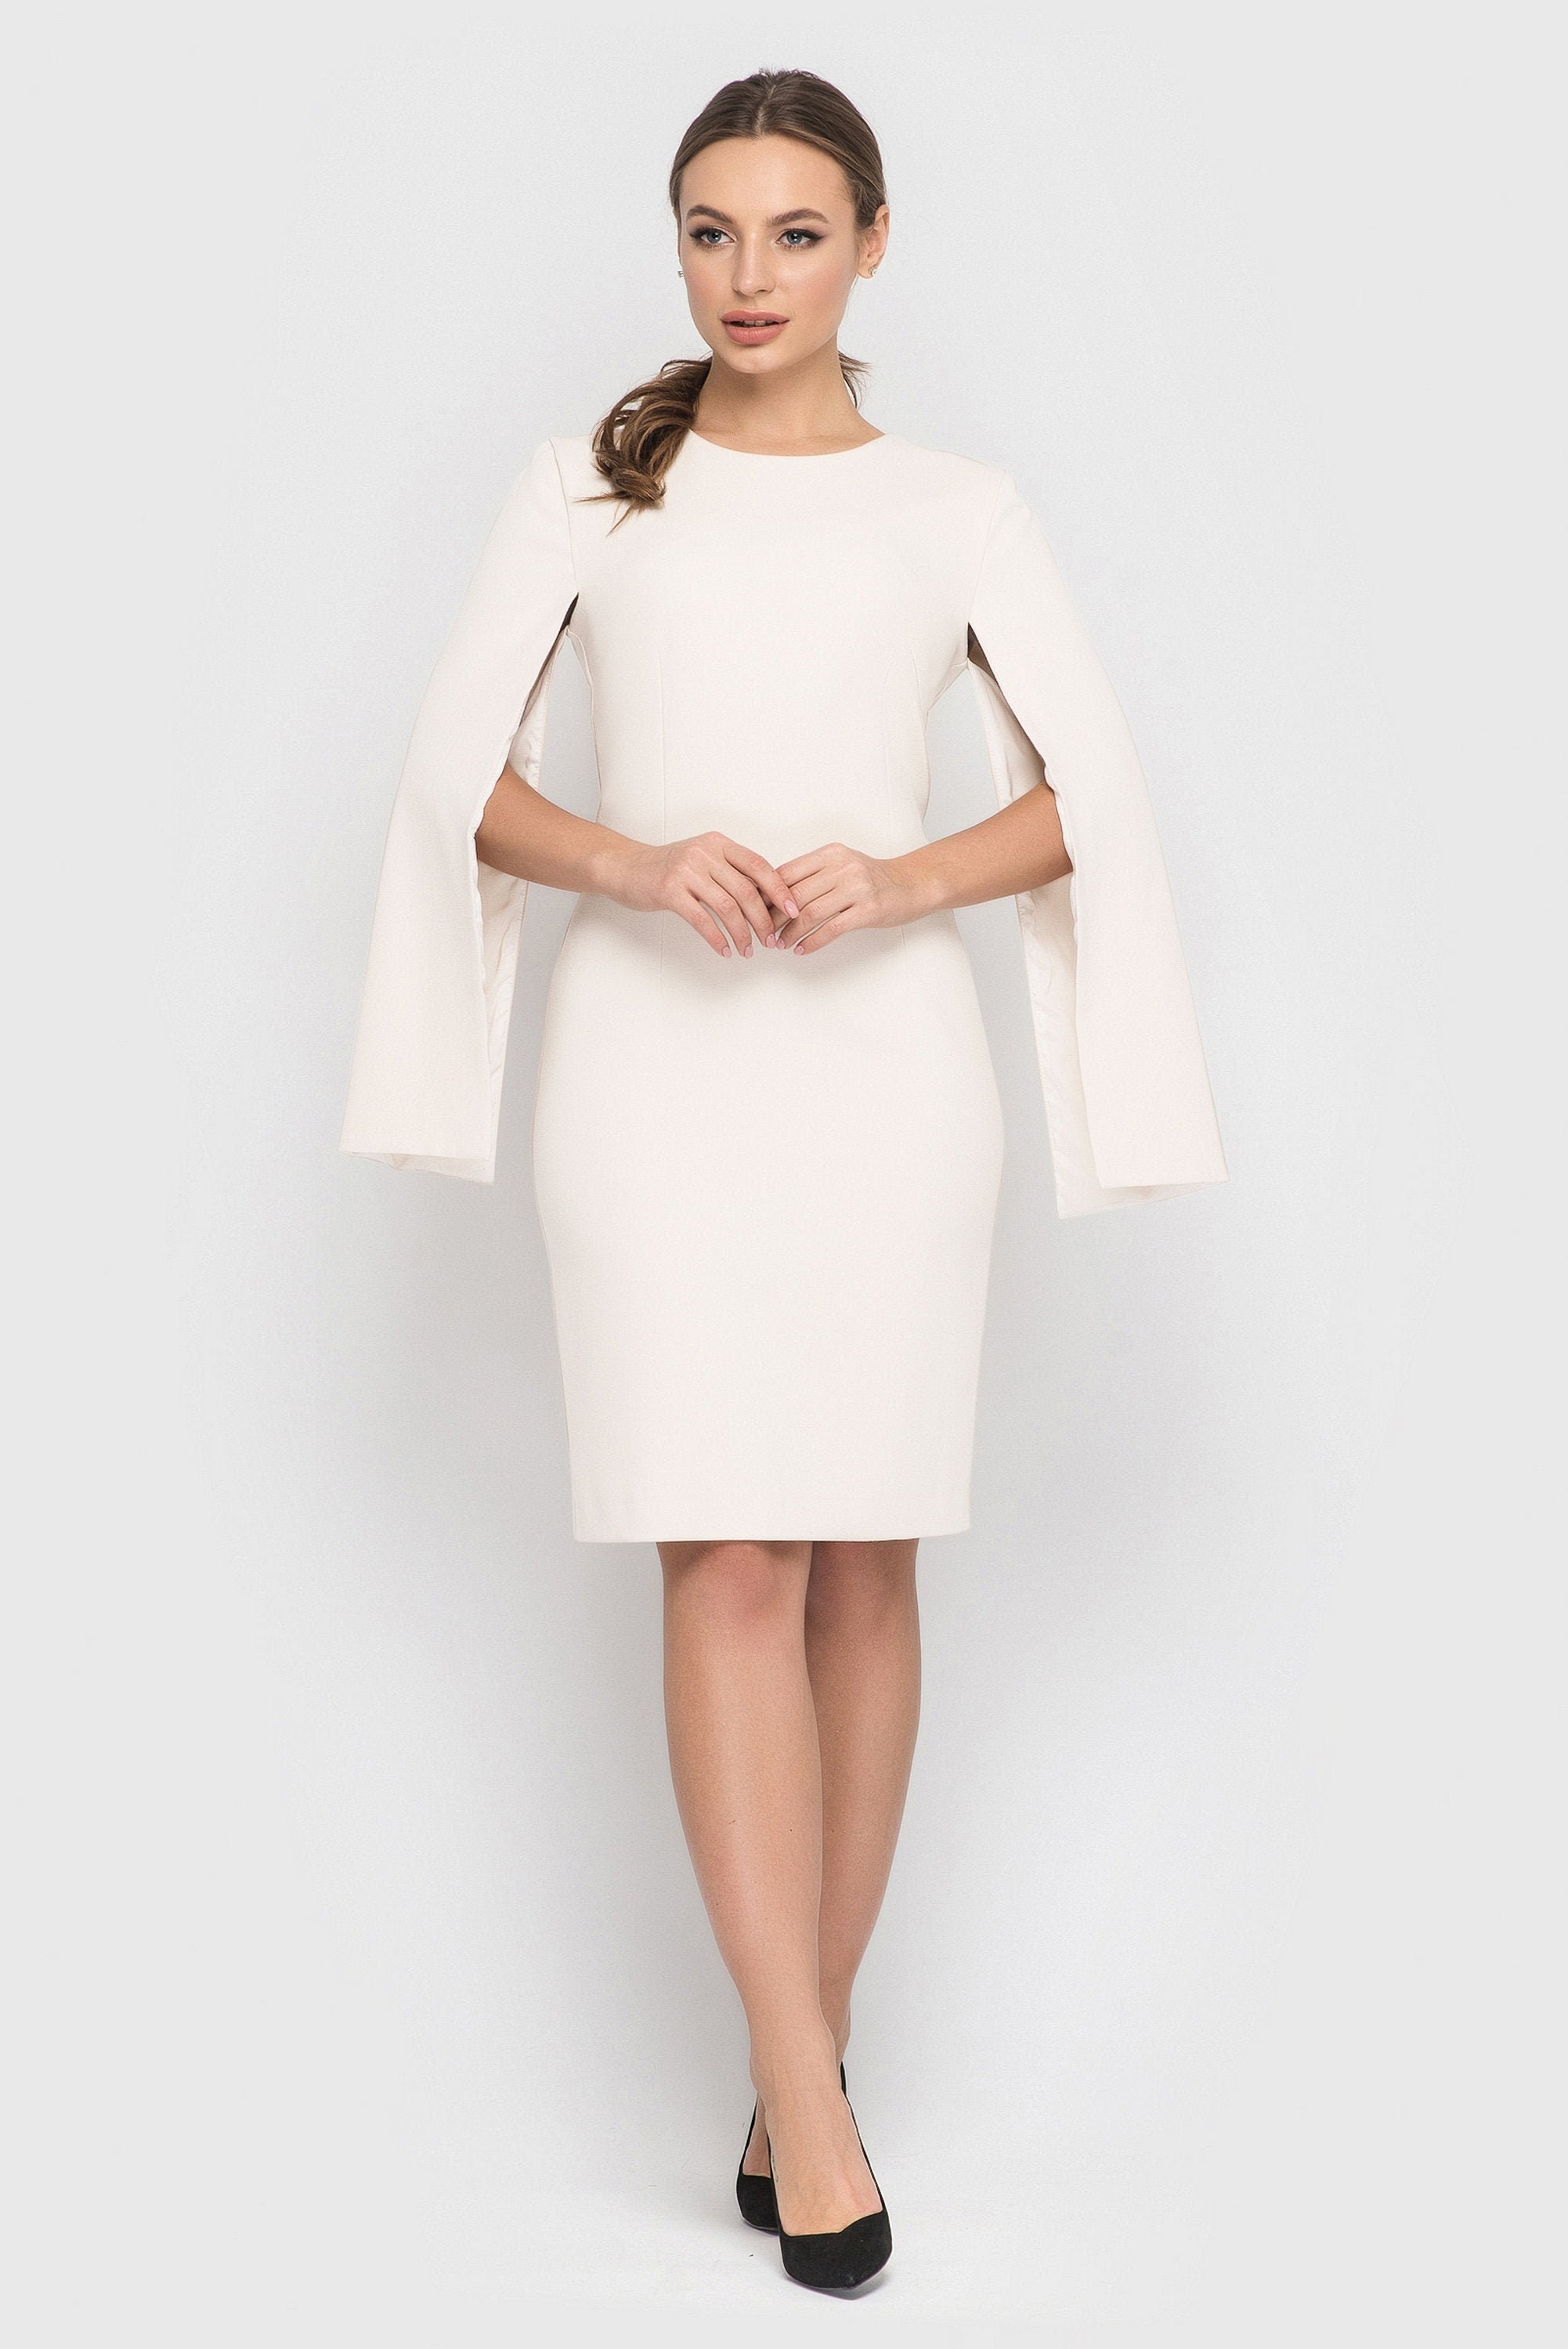 white cape dress